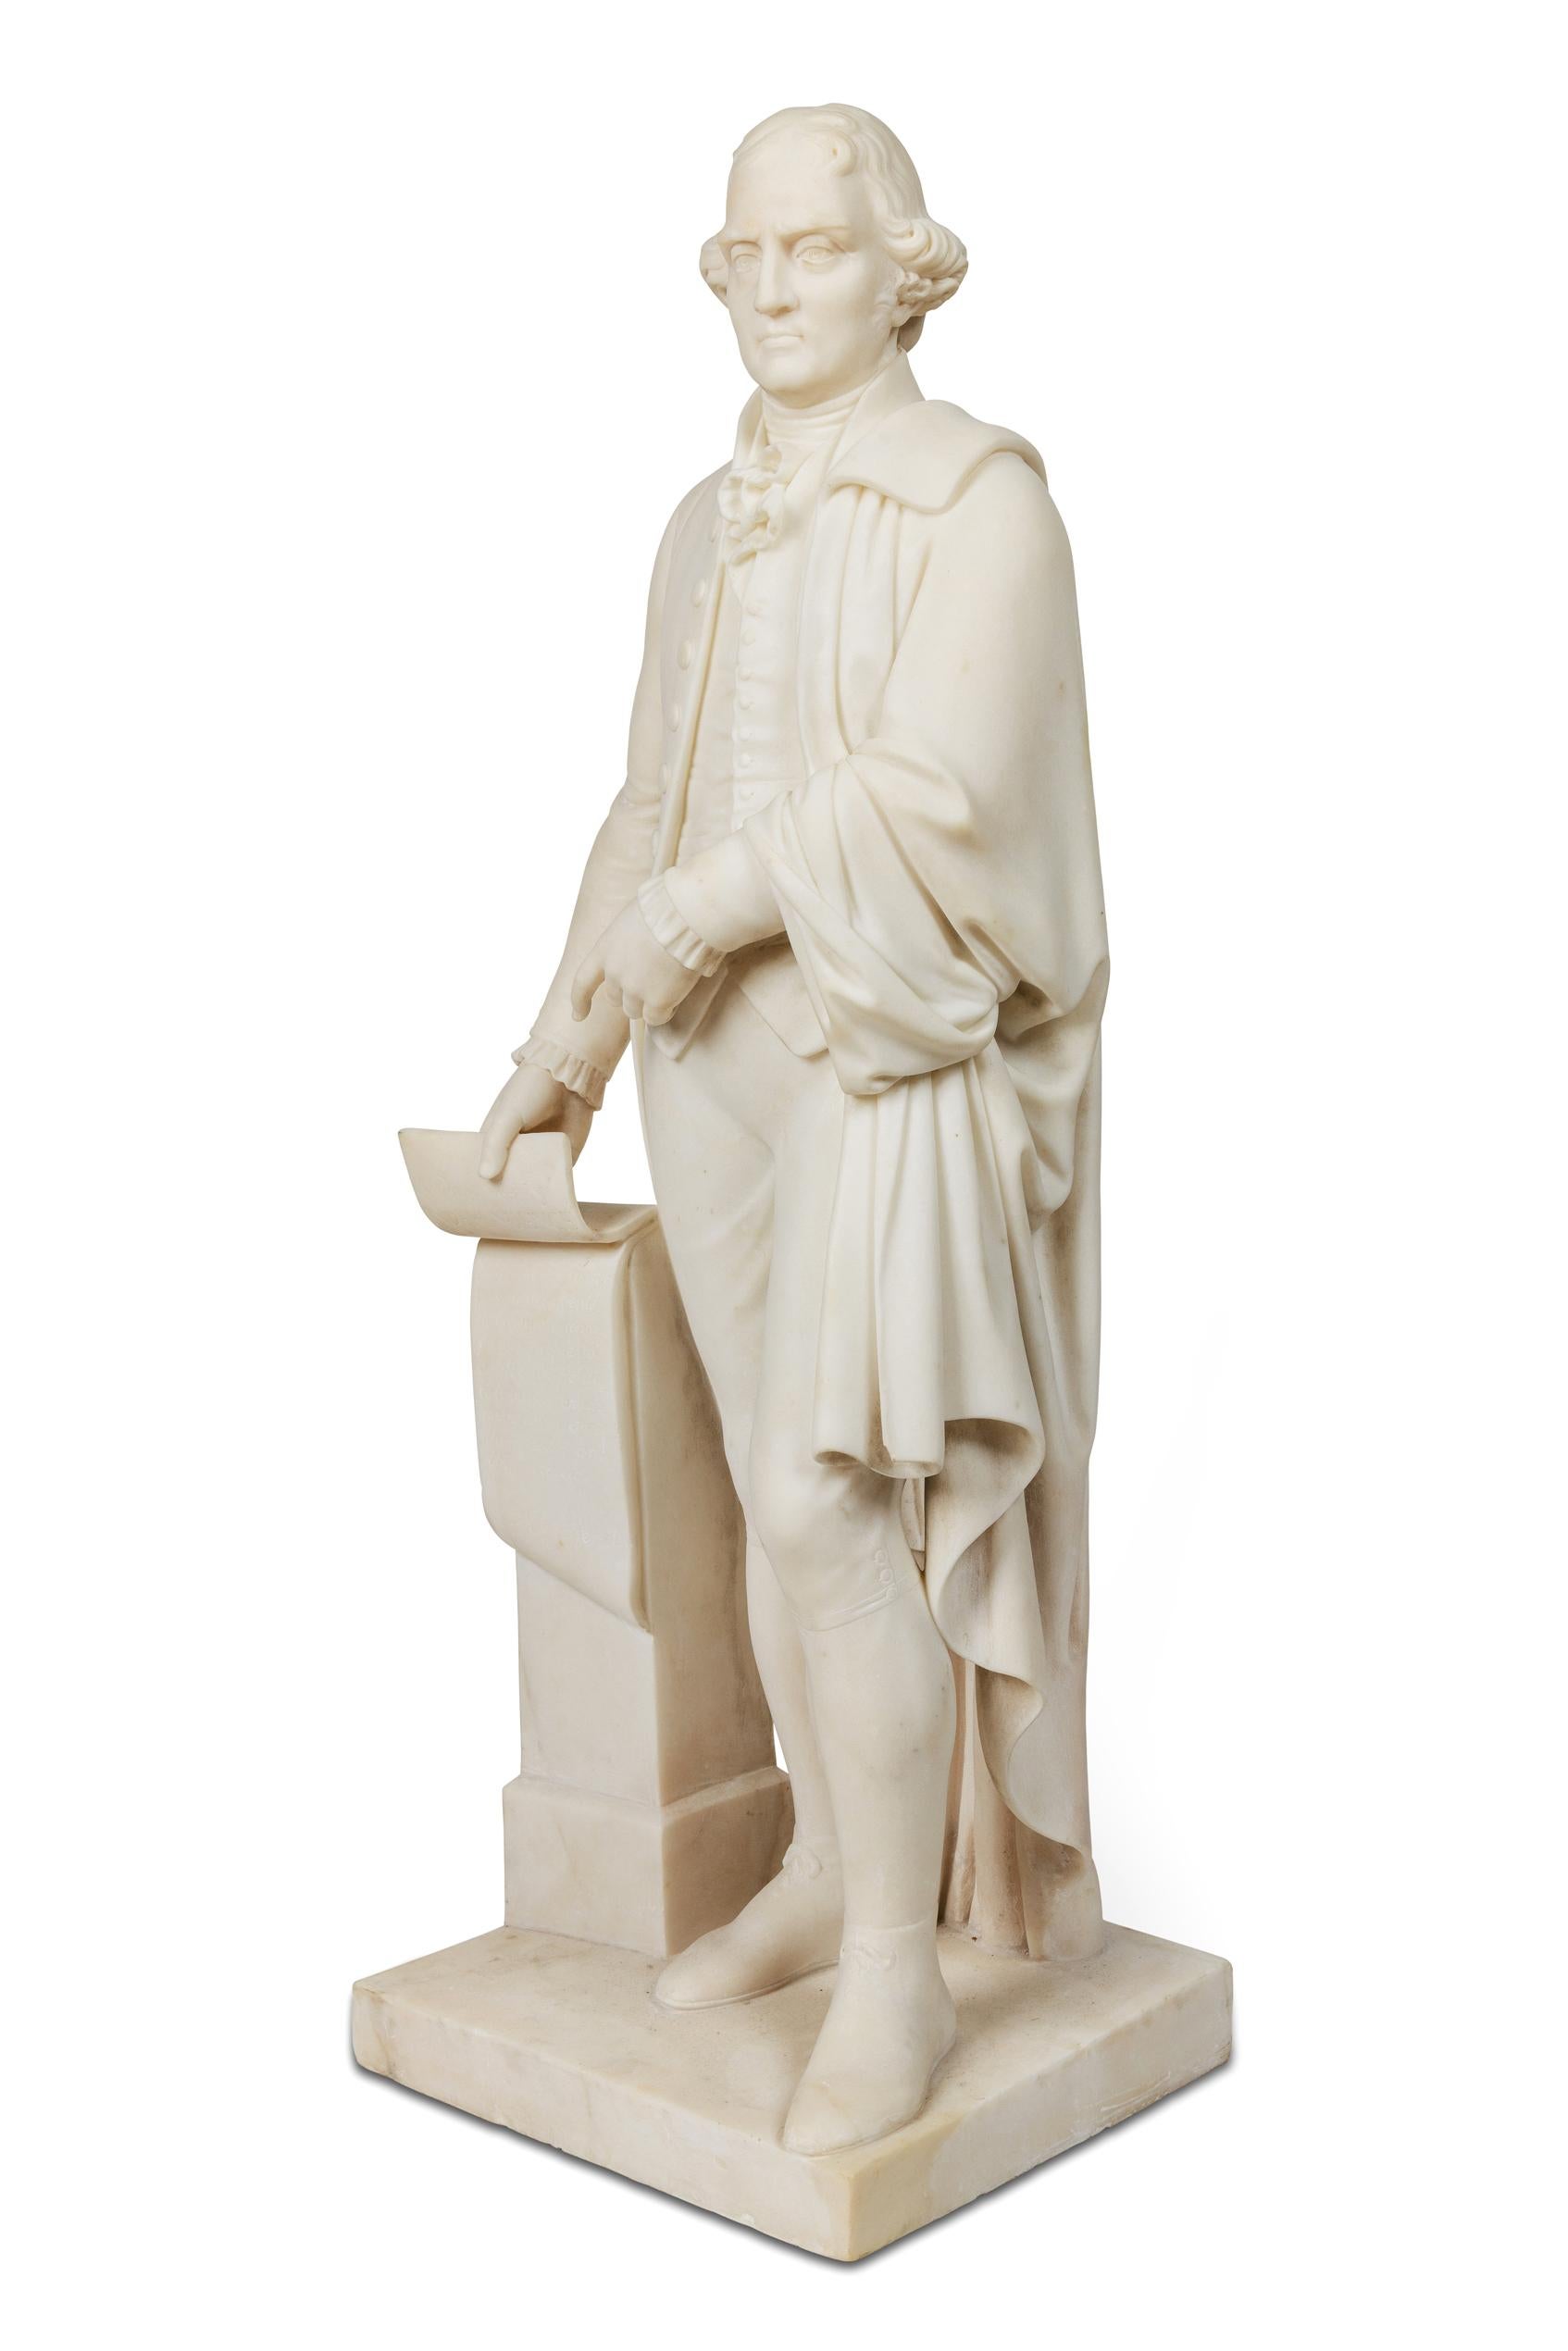 Eine seltene und wichtige amerikanische Skulptur aus weißem Marmor von Thomas Jefferson, der die Unabhängigkeitserklärung hält. CIRCA 1870, nach dem Vorbild von Horatio Stone (1808 -1875).

Inschrift auf der Schriftrolle: Die